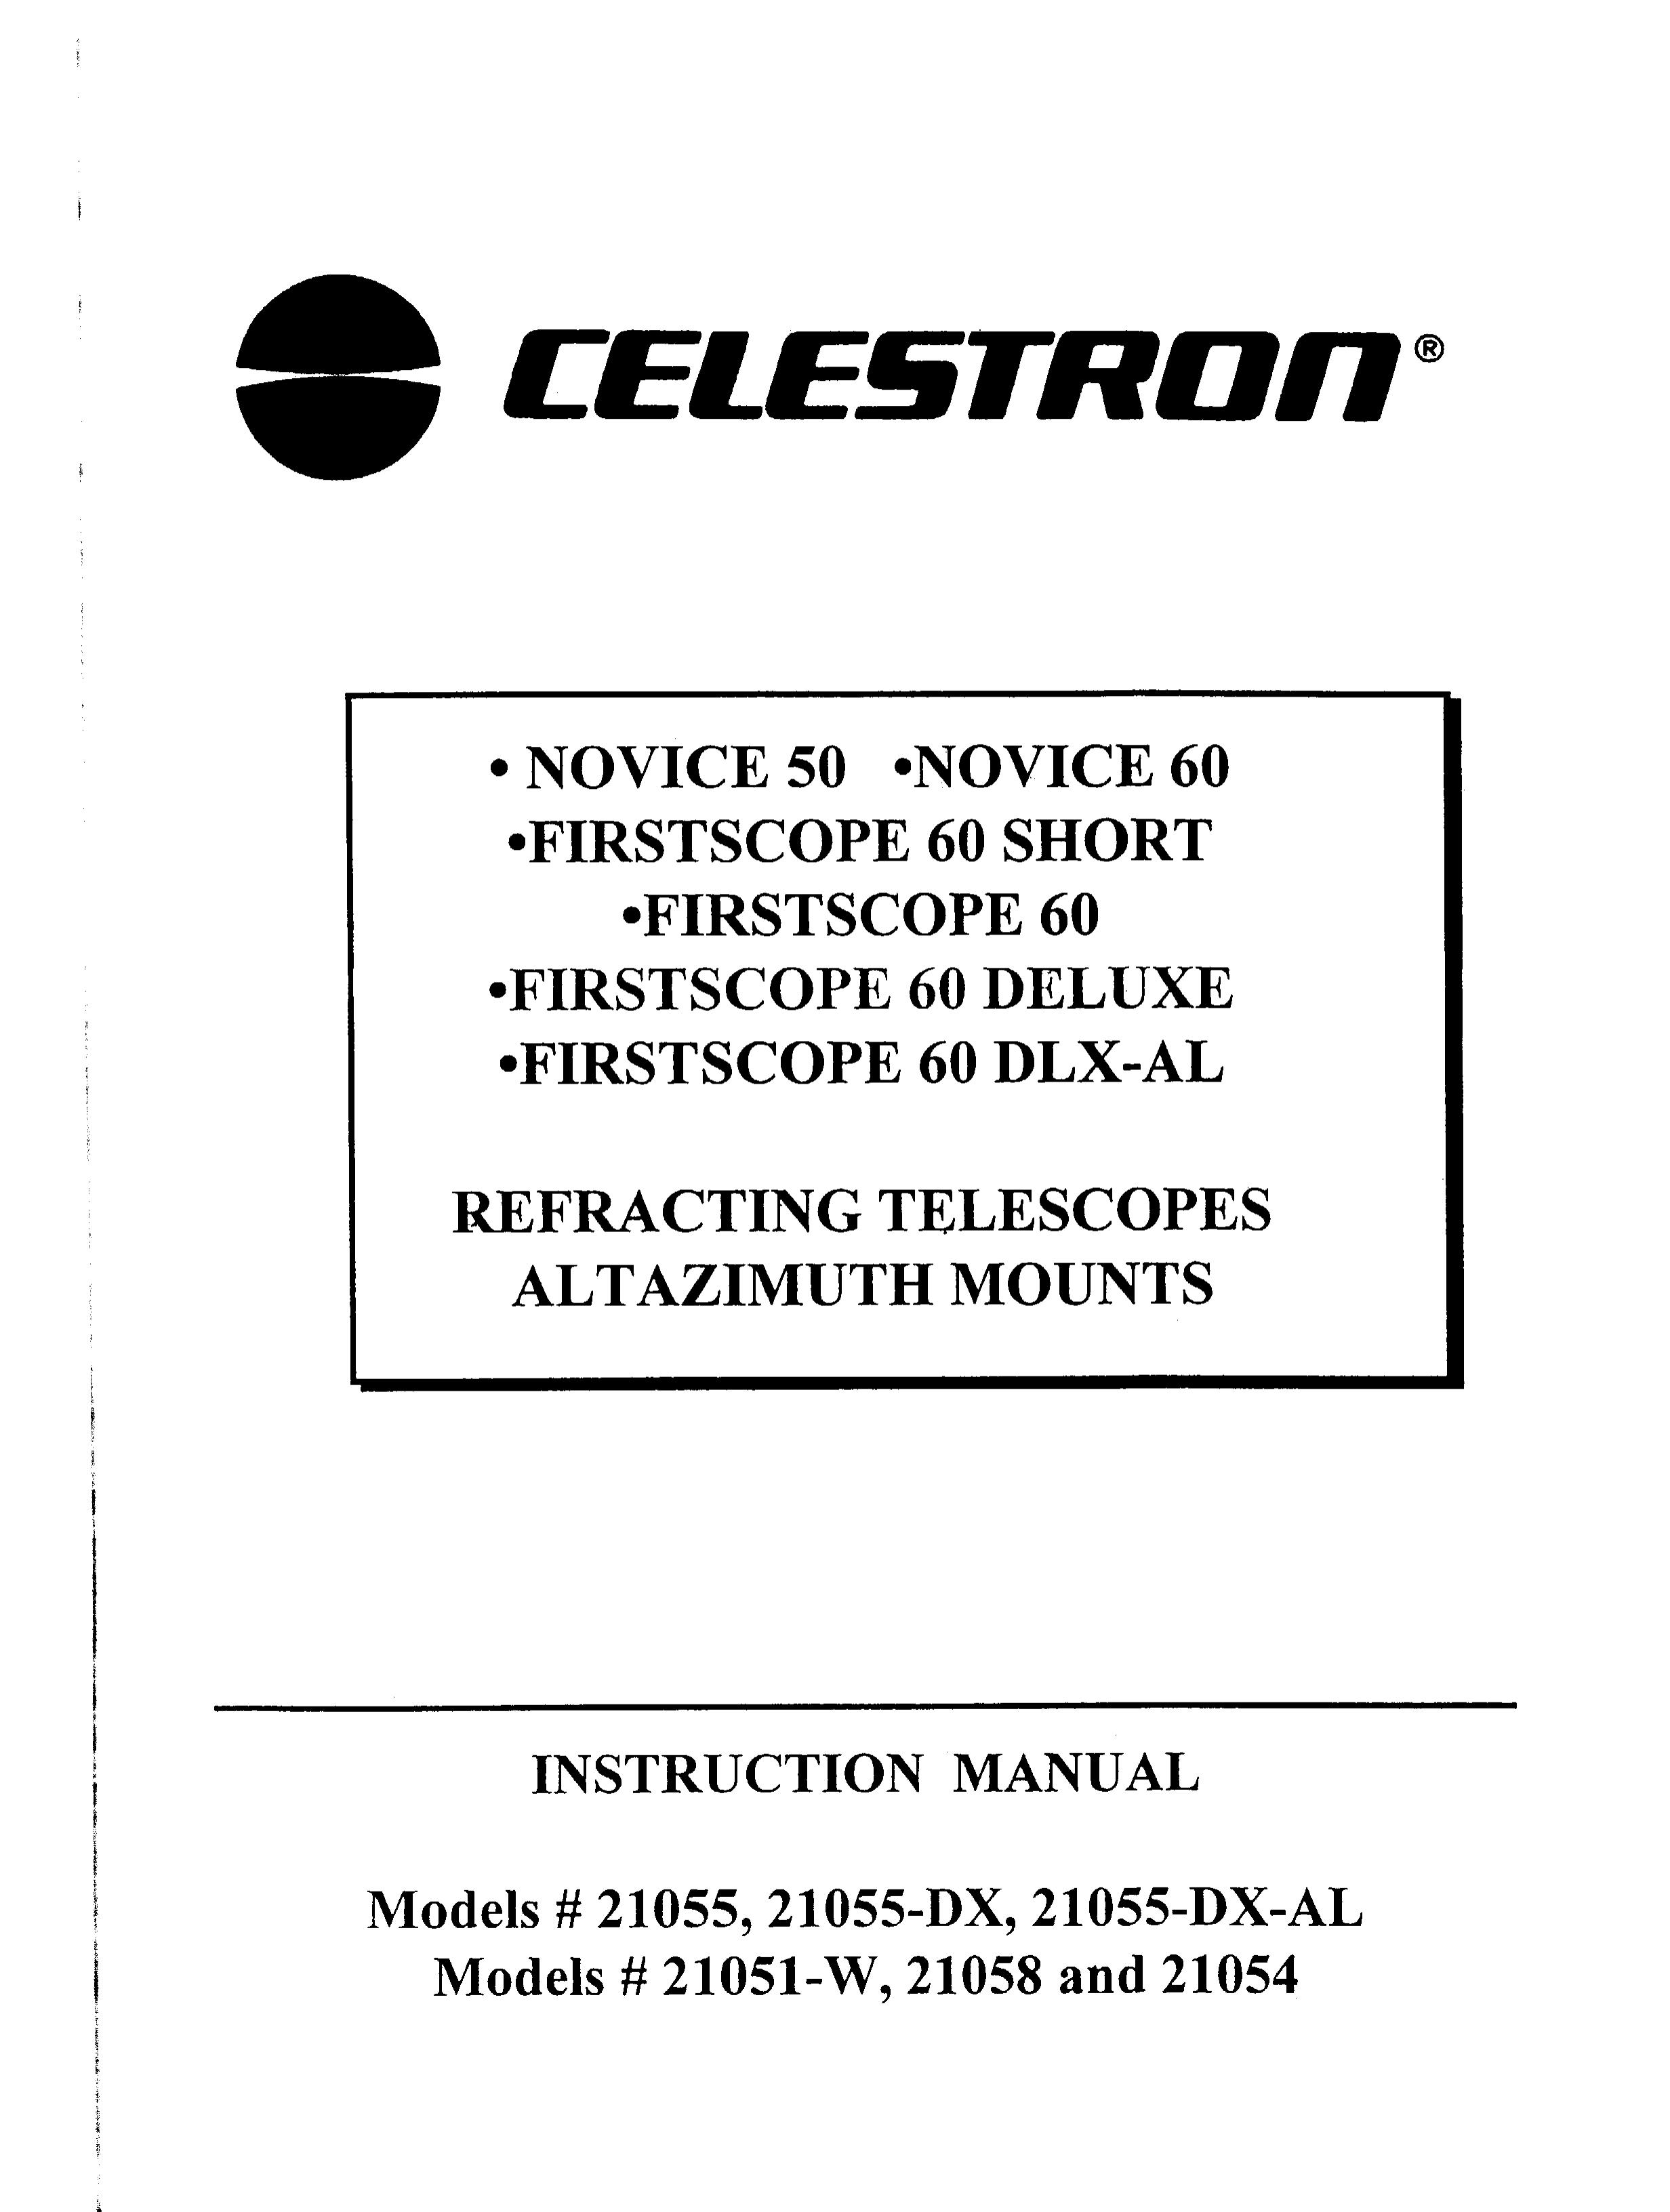 Celestron 21055-DX-AL Telescope User Manual